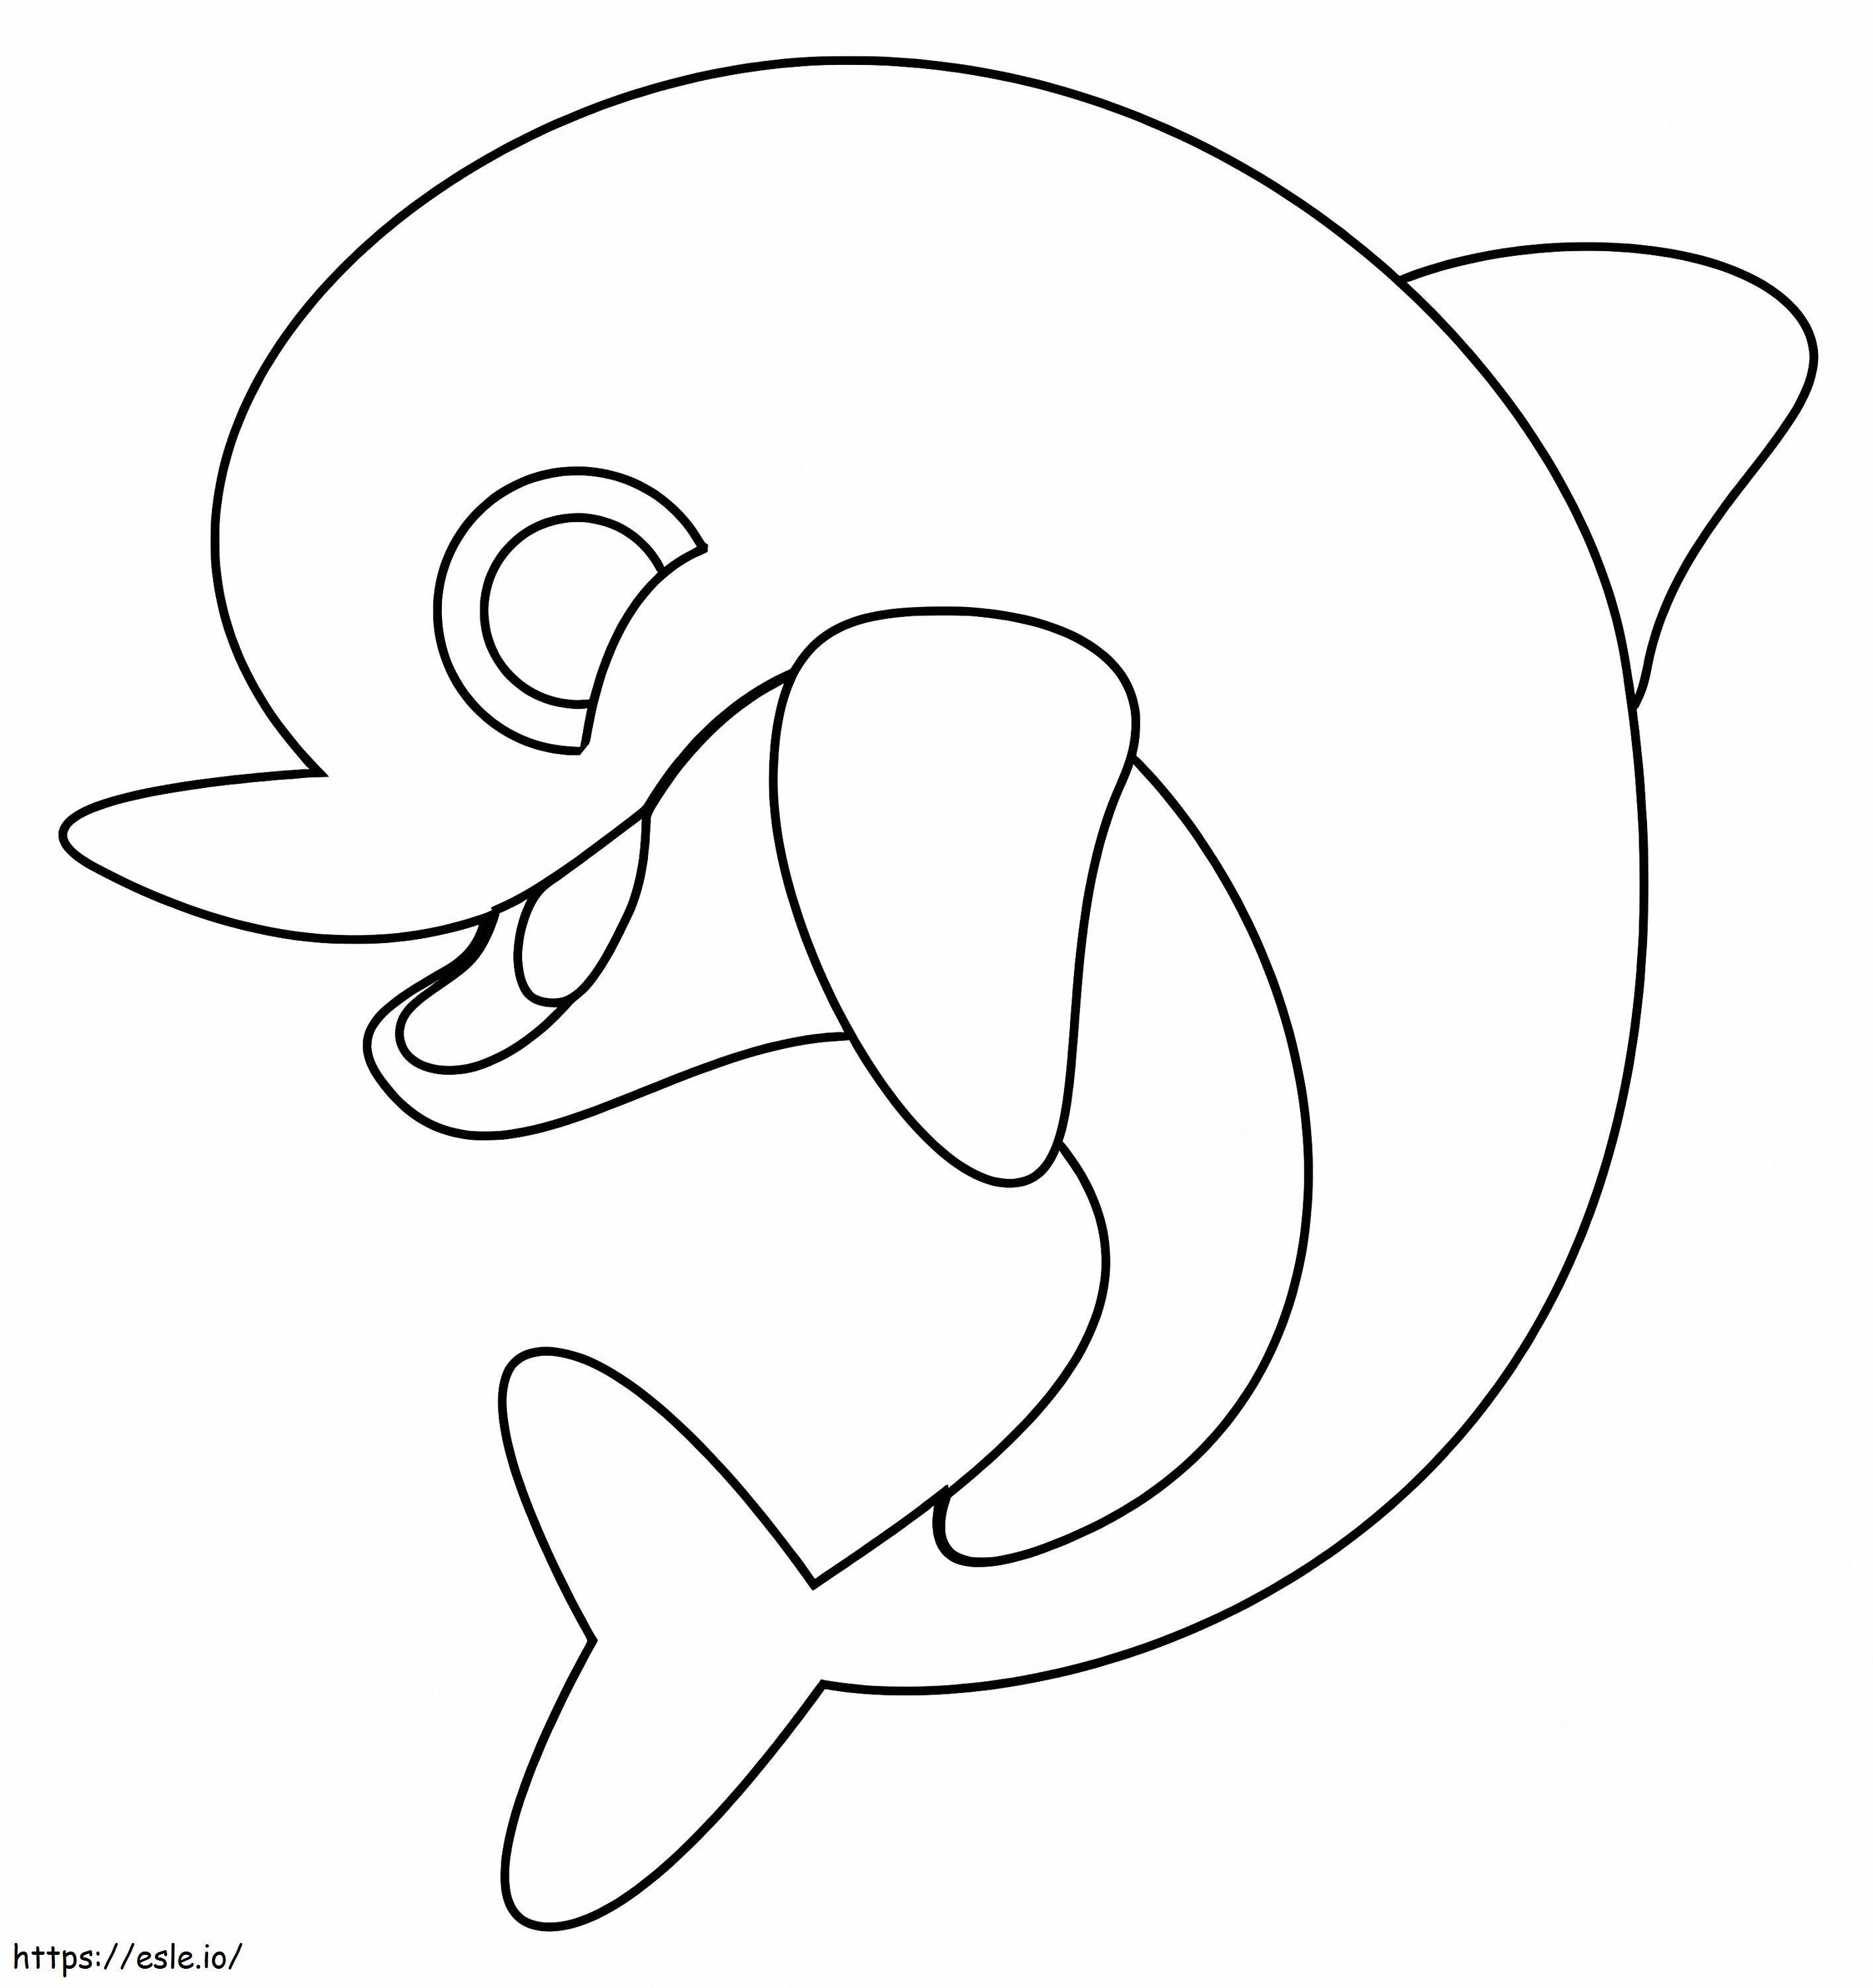 Coloriage Mignon bébé dauphin à imprimer dessin